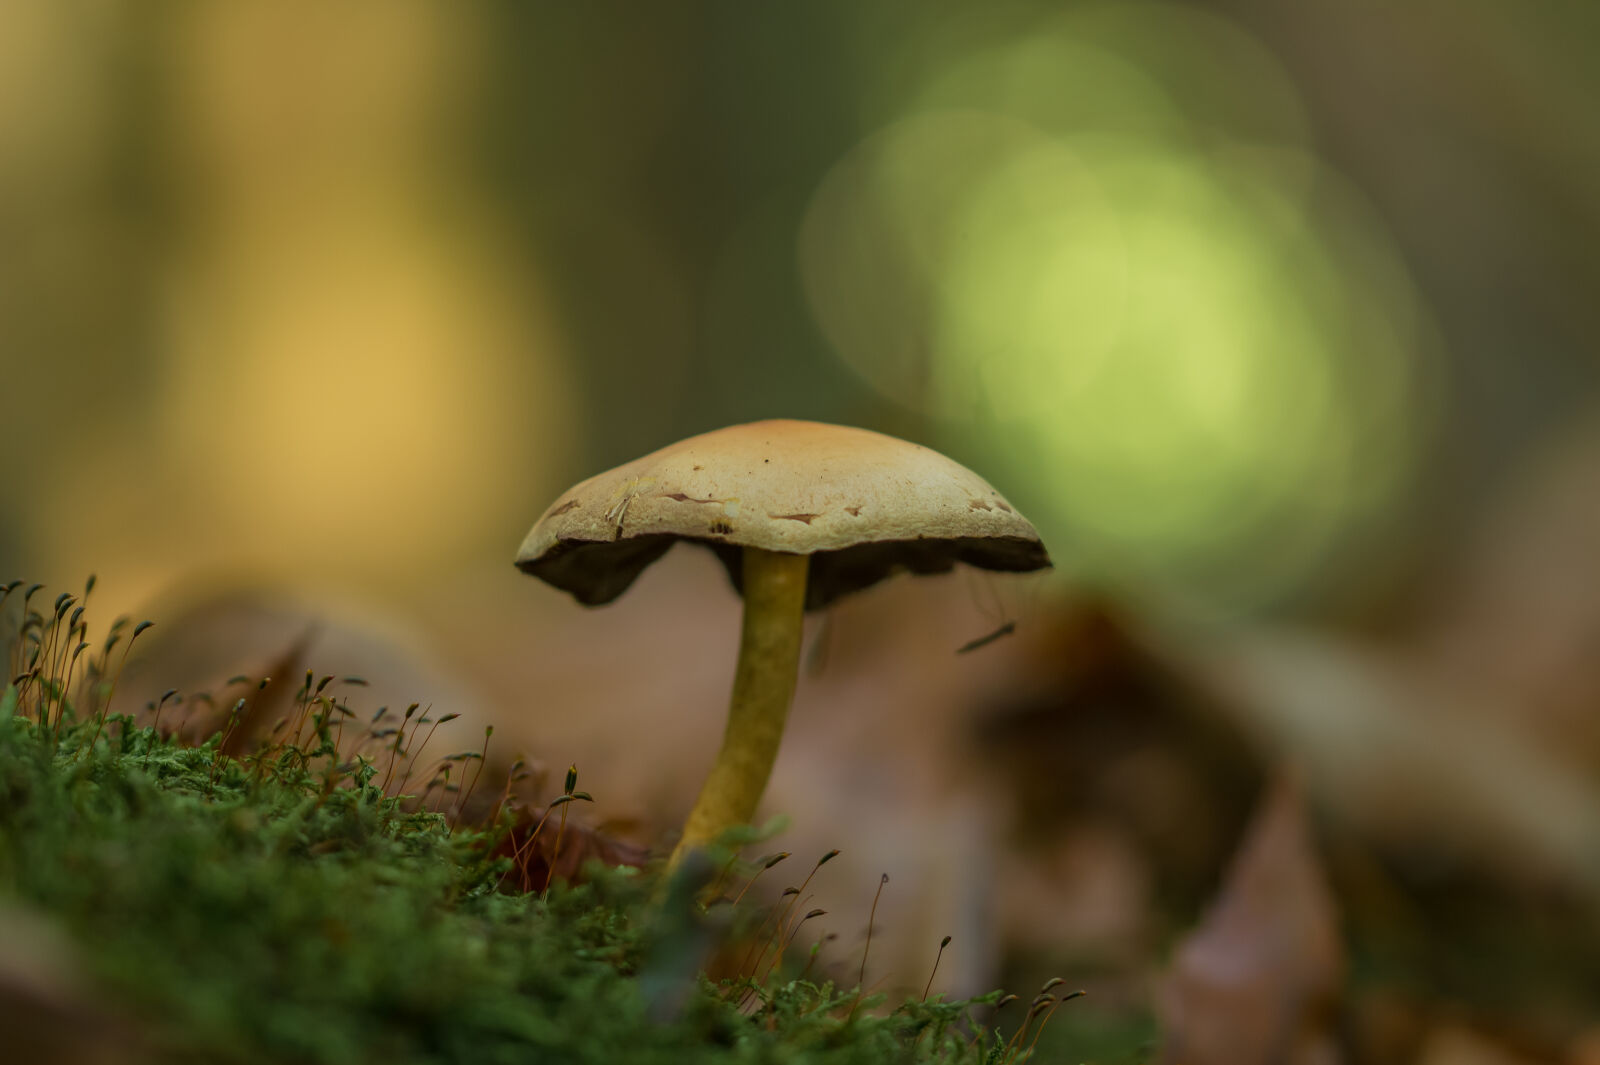 Sony SLT-A58 sample photo. Boletus, fungus, grass, growth photography